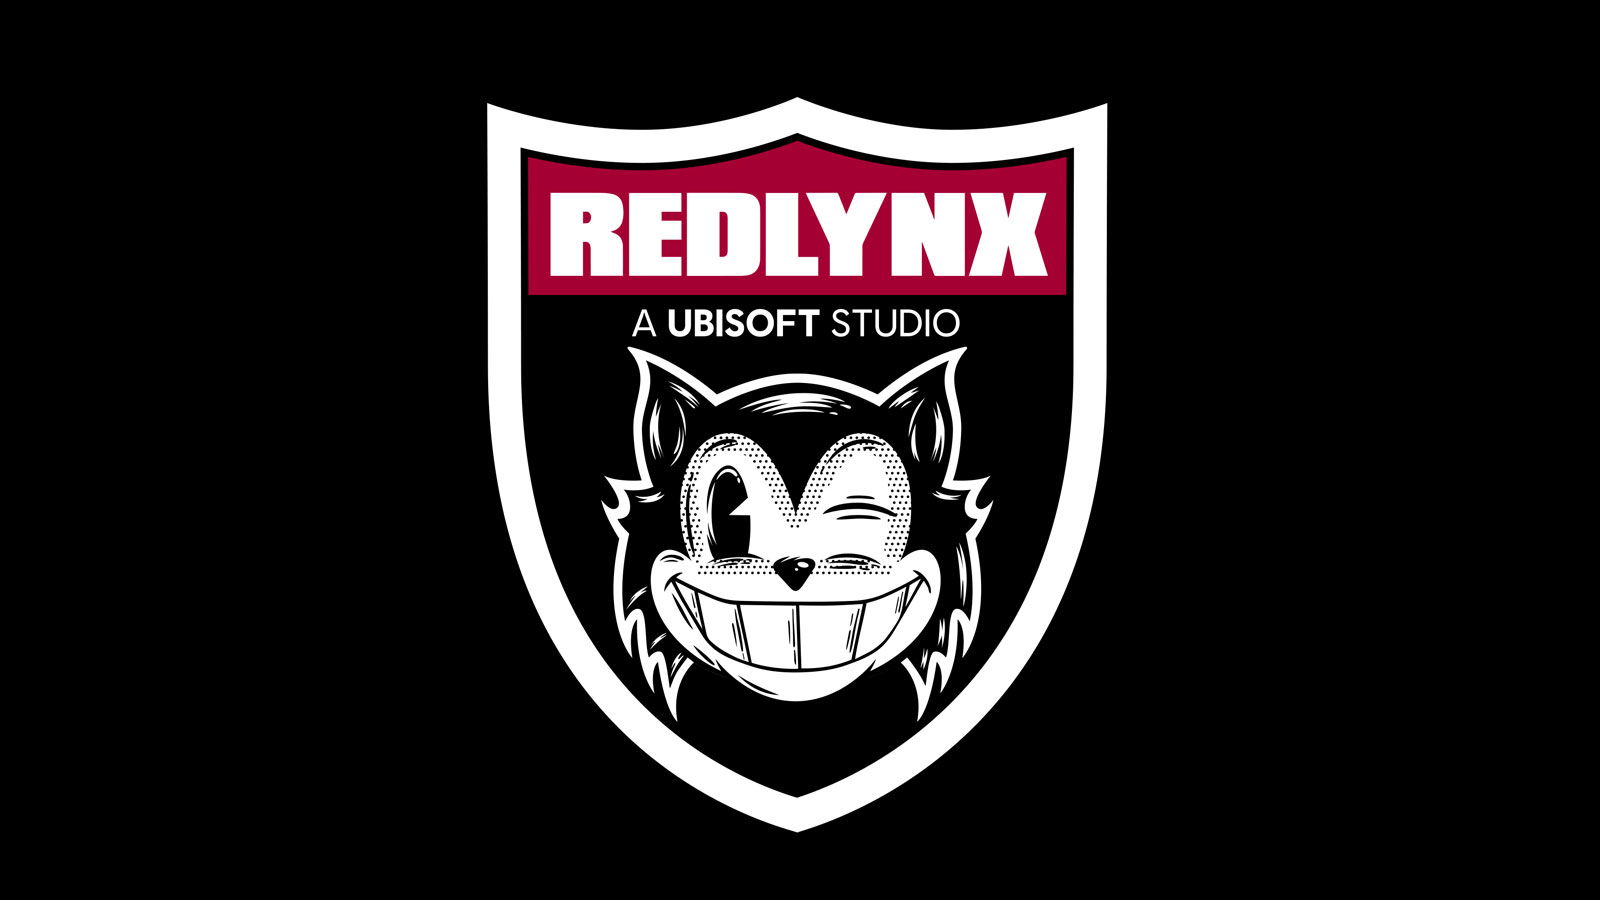 Ubisoft RedLynx studio logo